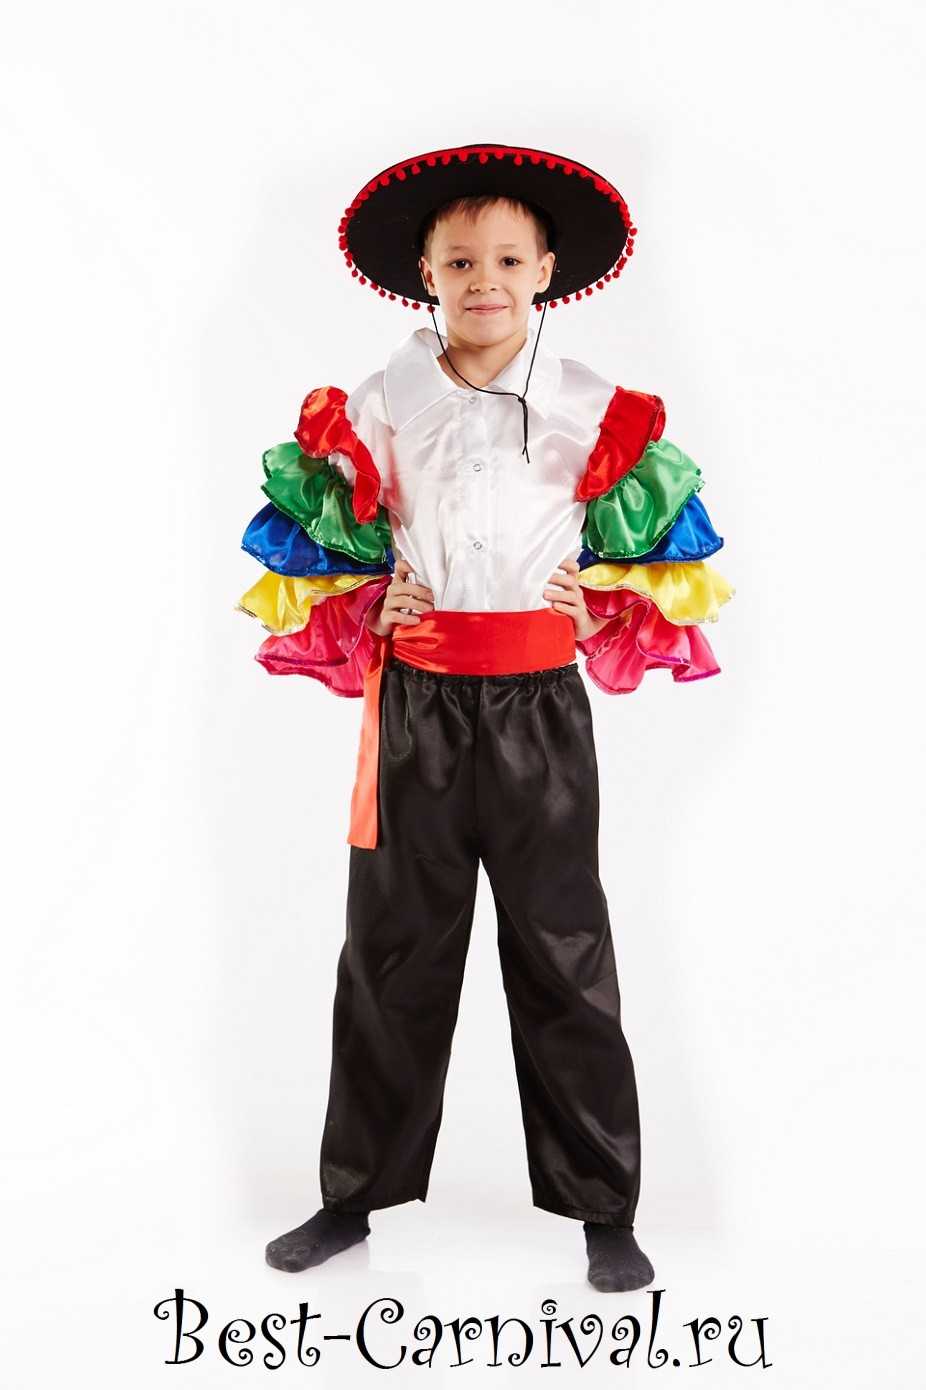 Мексиканская одежда: костюмы и национальный стиль мексики